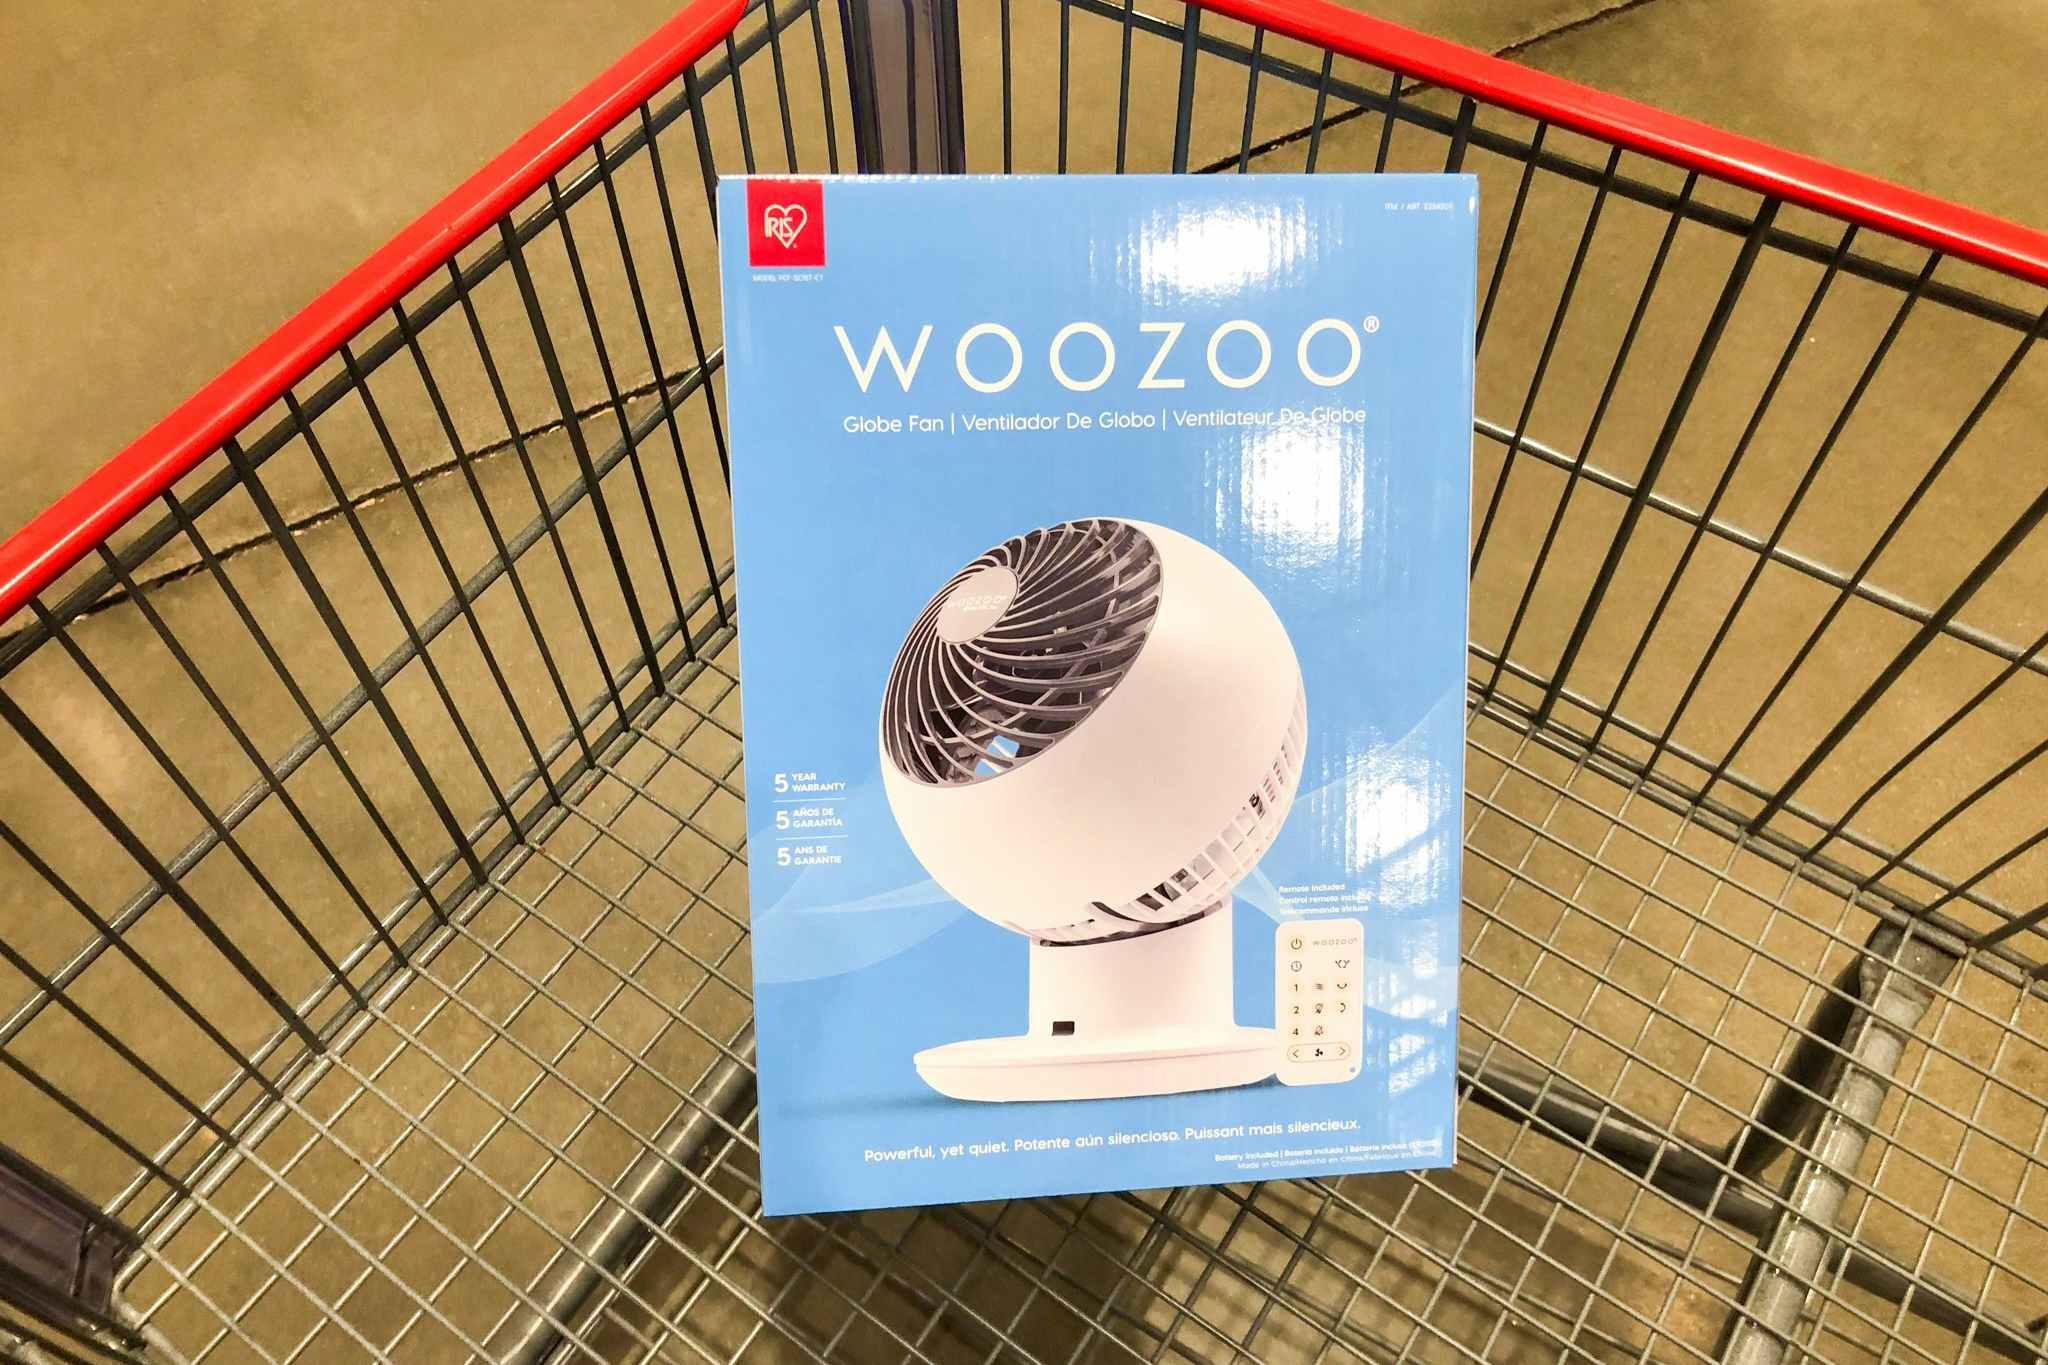 Woozoo 5-Speed Globe Fan, Only $27.99 at Costco (Reg. $37.99)